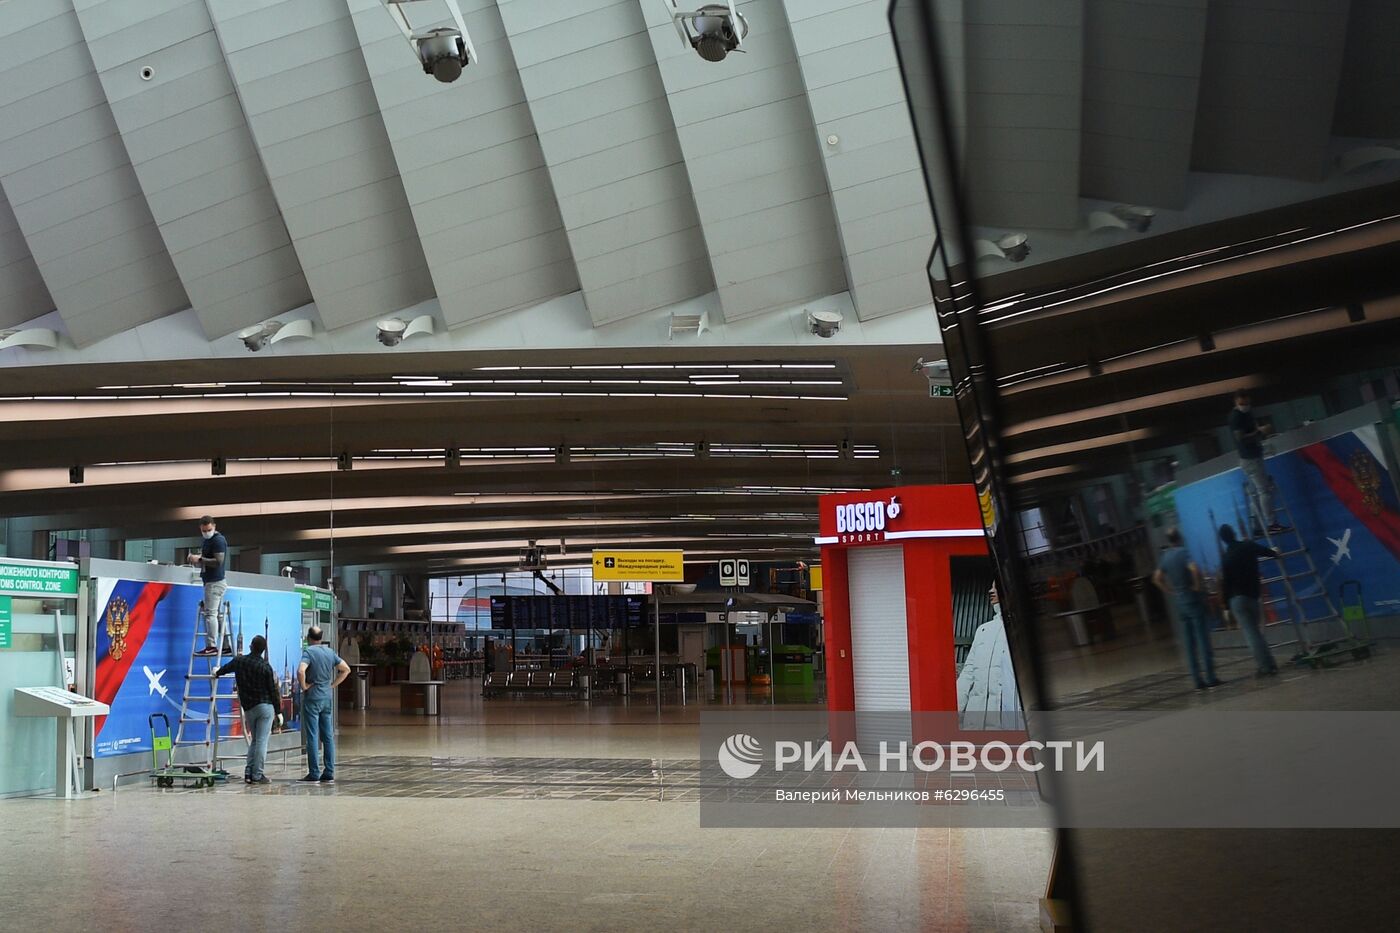 Возобновление работы терминала D аэропорта Шереметьево в полном объеме